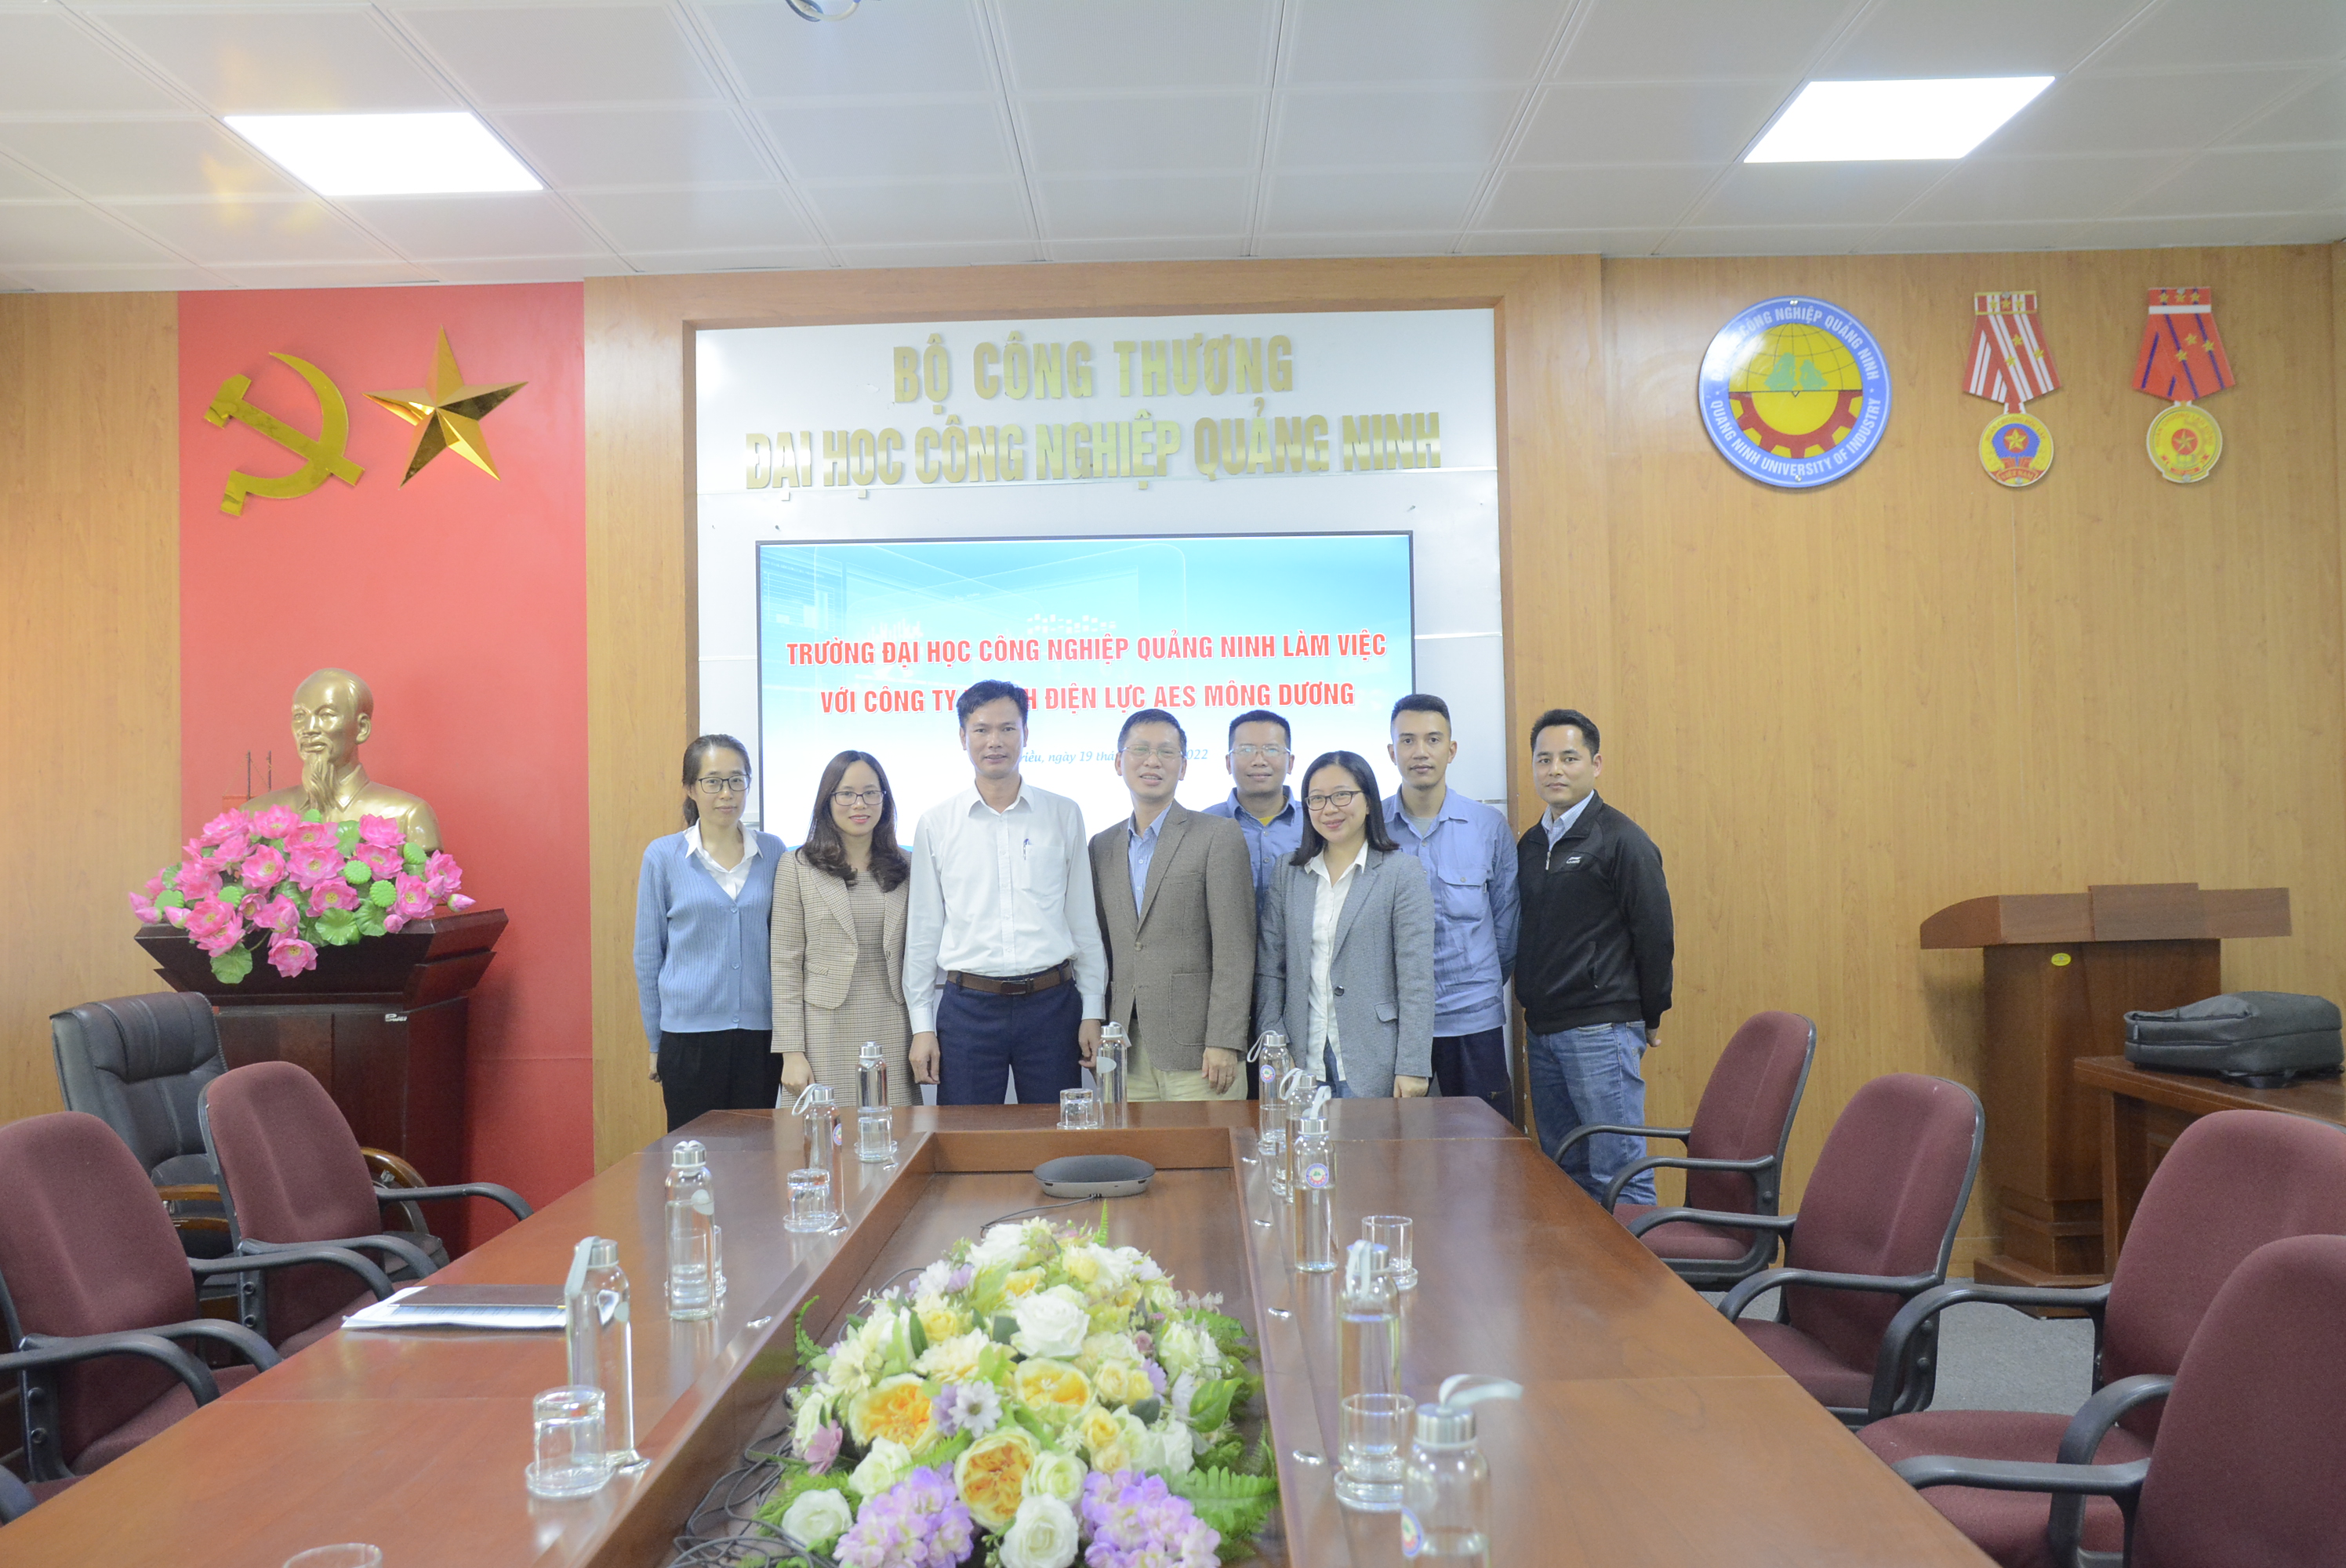 Làm việc với Công ty TNHH Điện lực AES Mông Dương